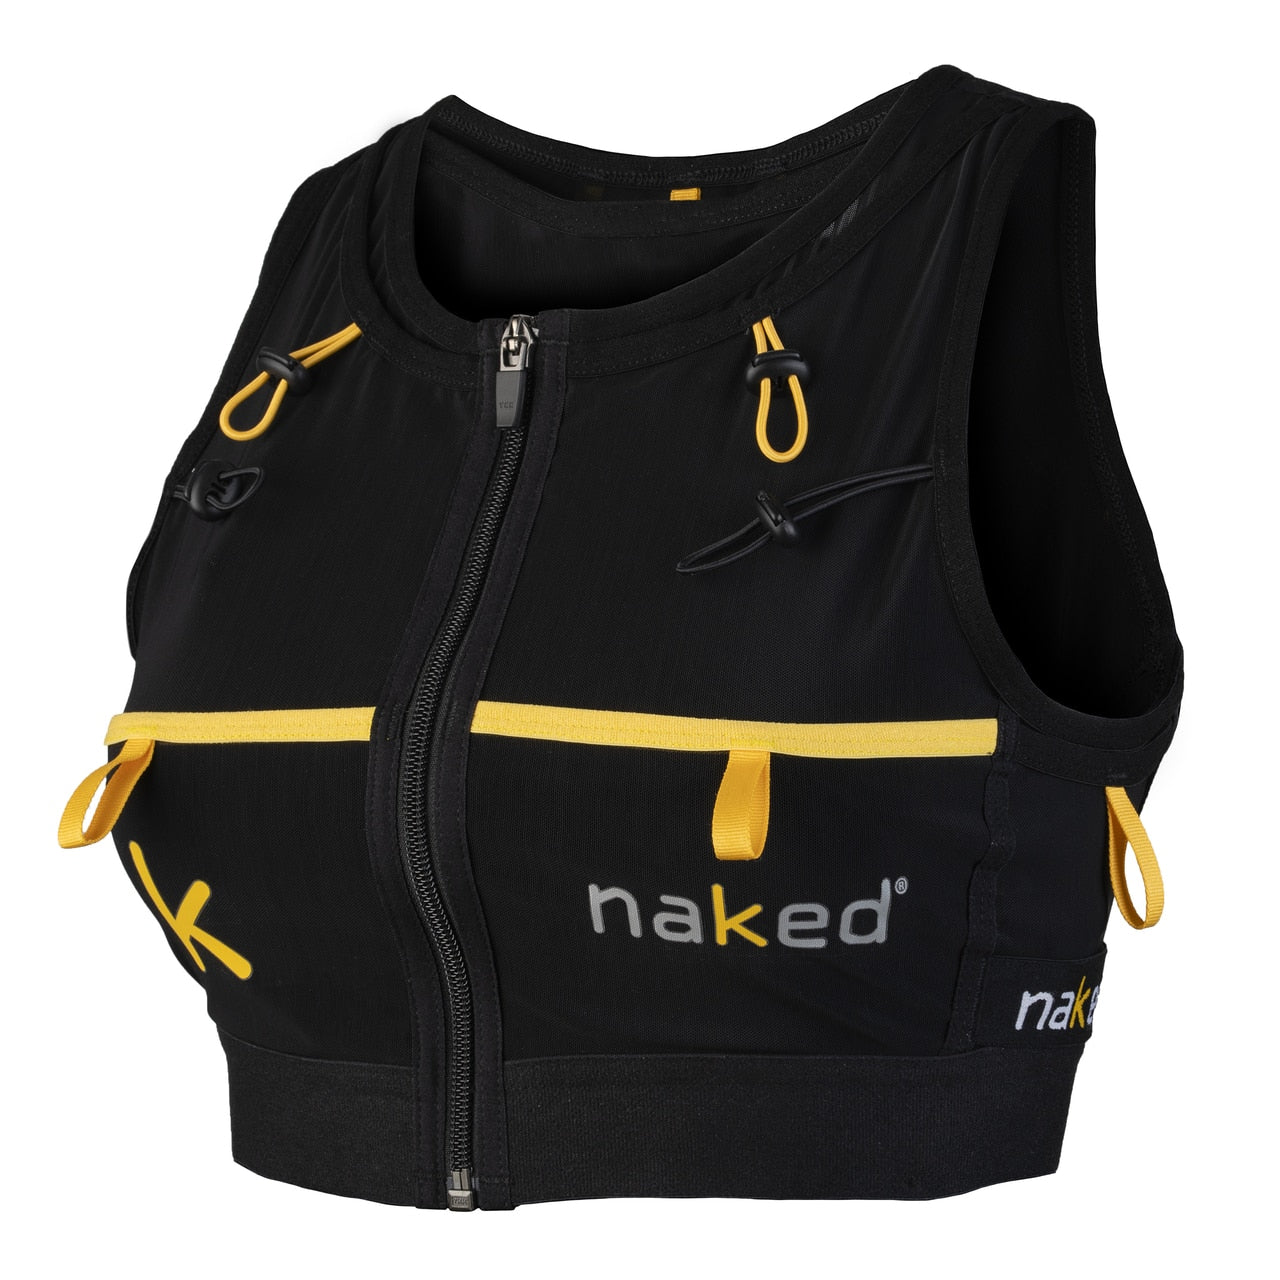 Naked - Running HC Vest - Women's